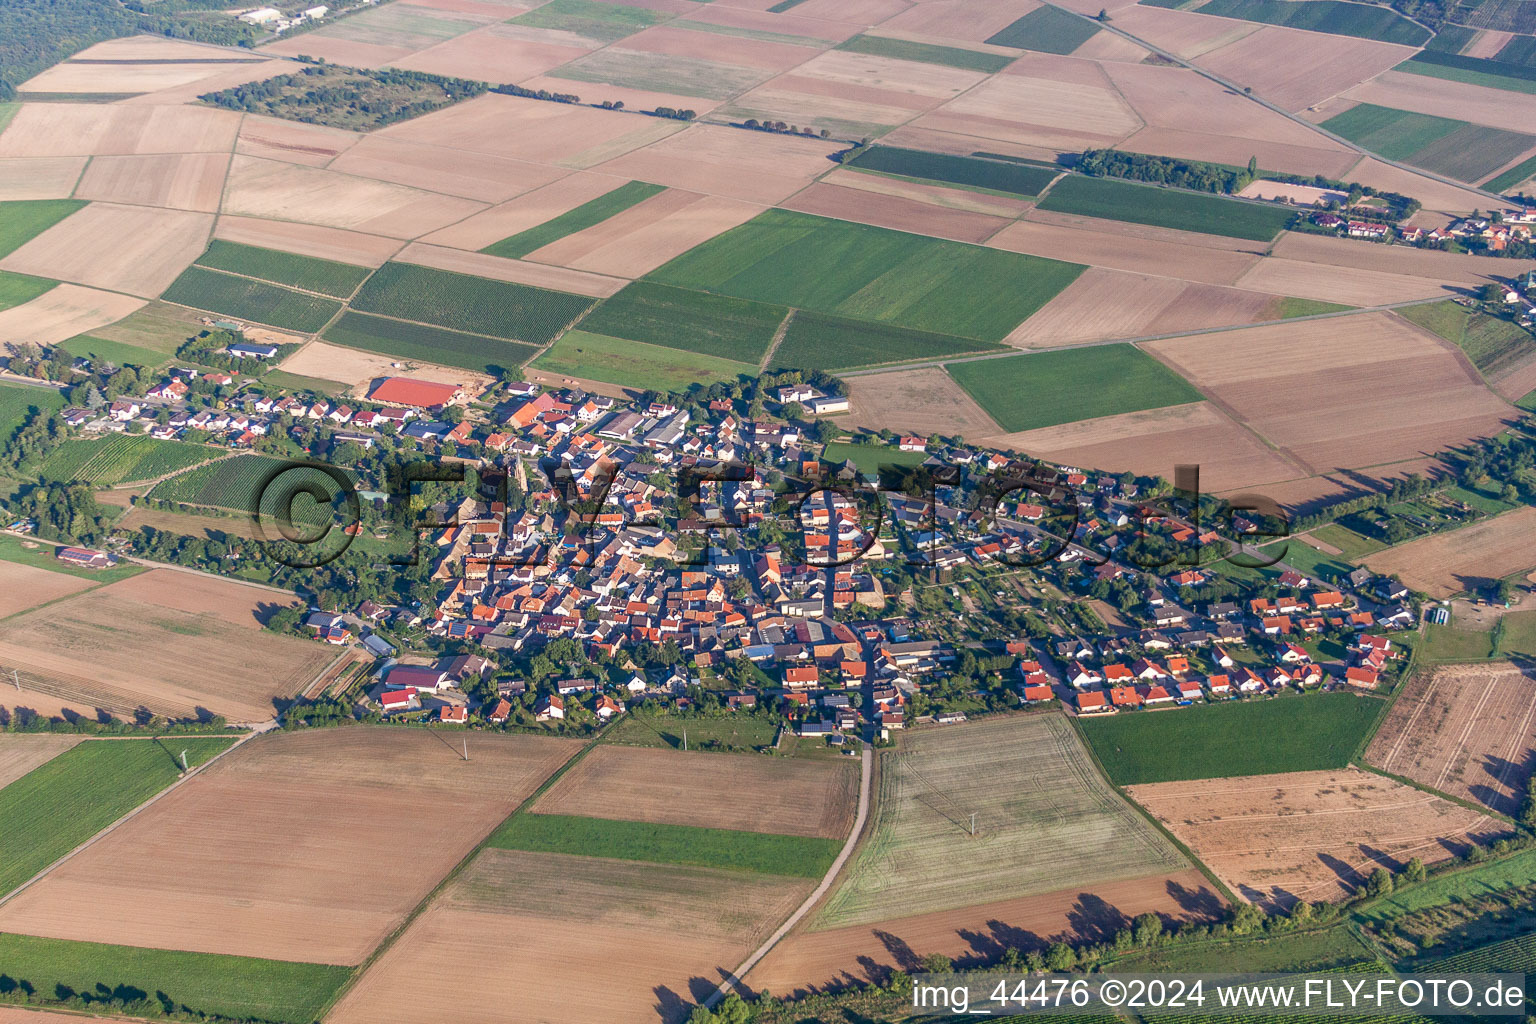 Vue aérienne de Champs agricoles et surfaces utilisables à Stein-Bockenheim dans le département Rhénanie-Palatinat, Allemagne